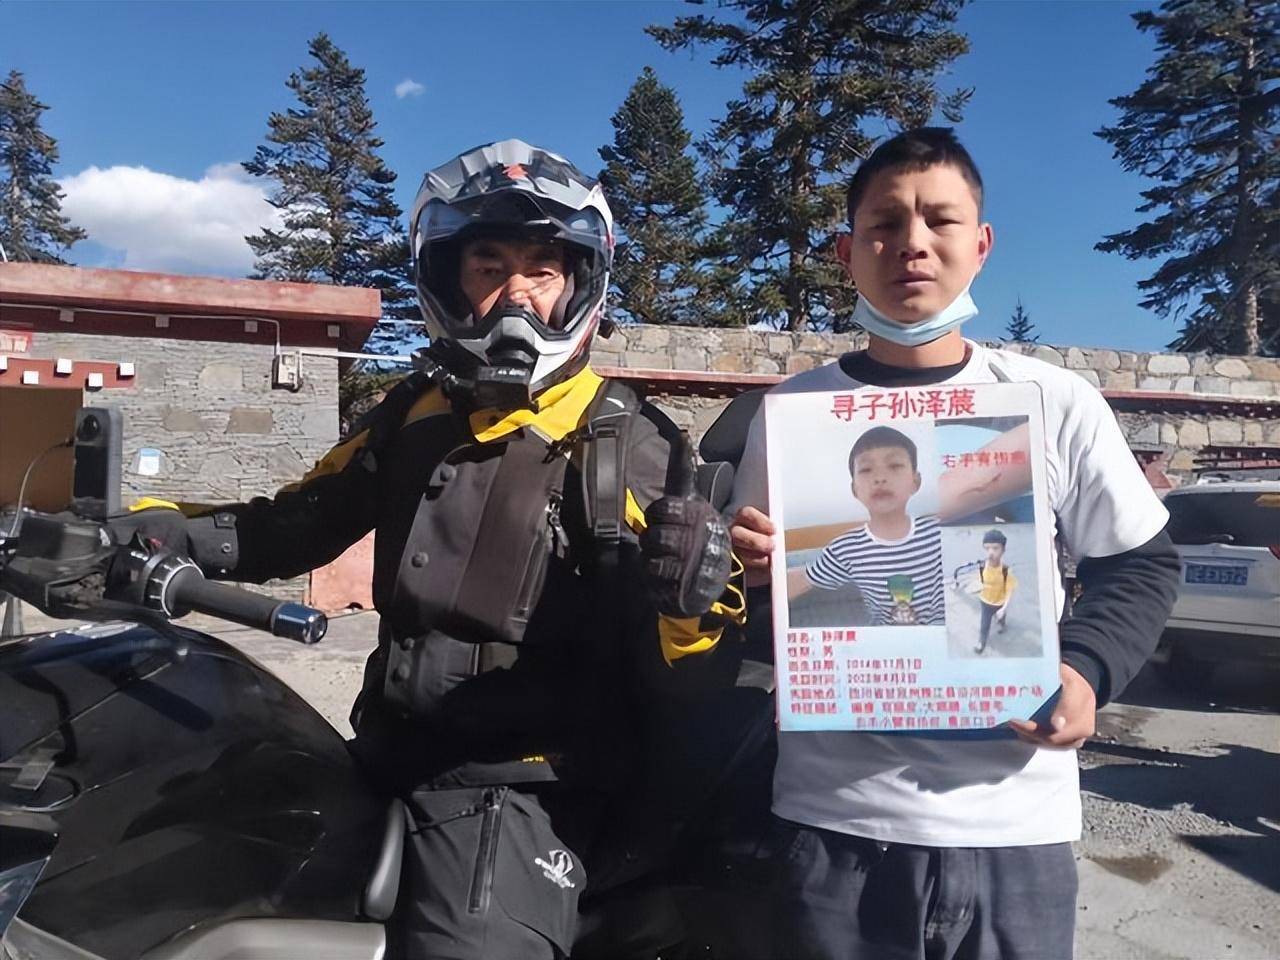 任贤齐转发一则失踪儿童案：四川甘孜8岁江边男童失踪3个月